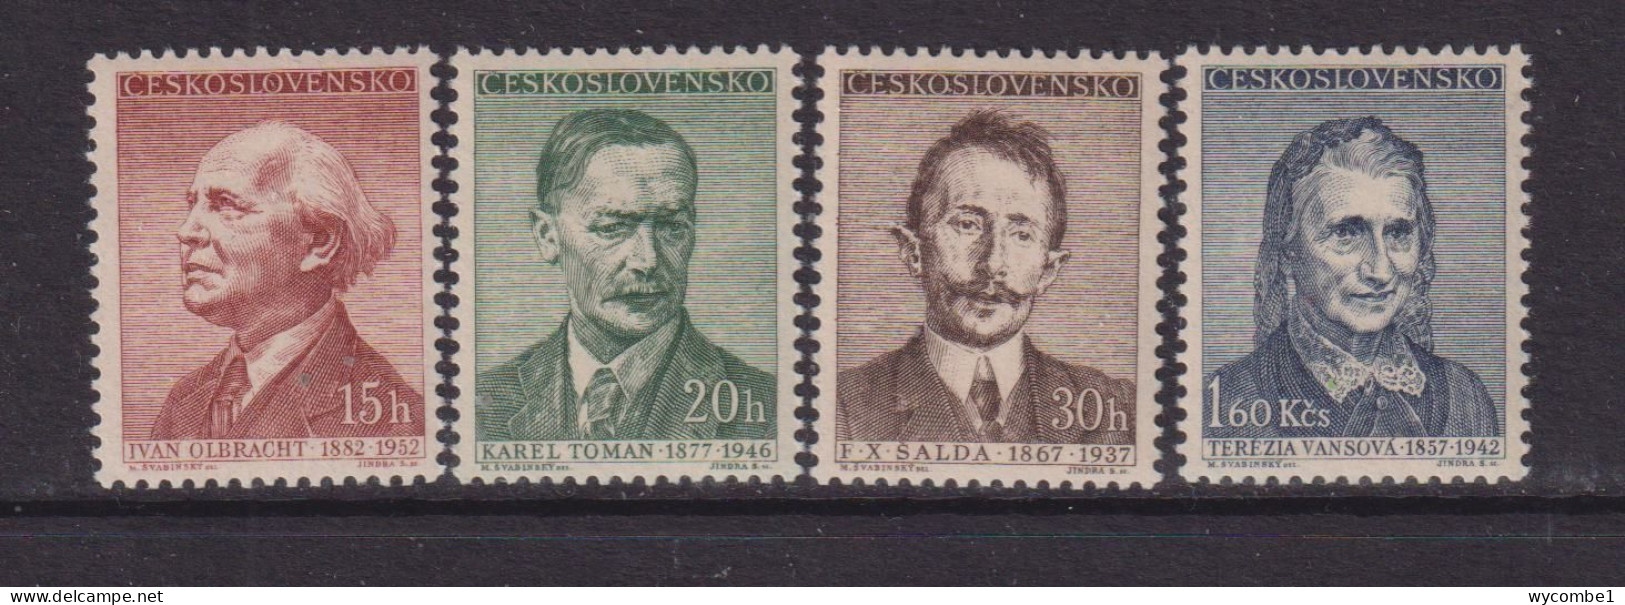 CZECHOSLOVAKIA  - 1957  Writers Set  Never Hinged Mint - Unused Stamps